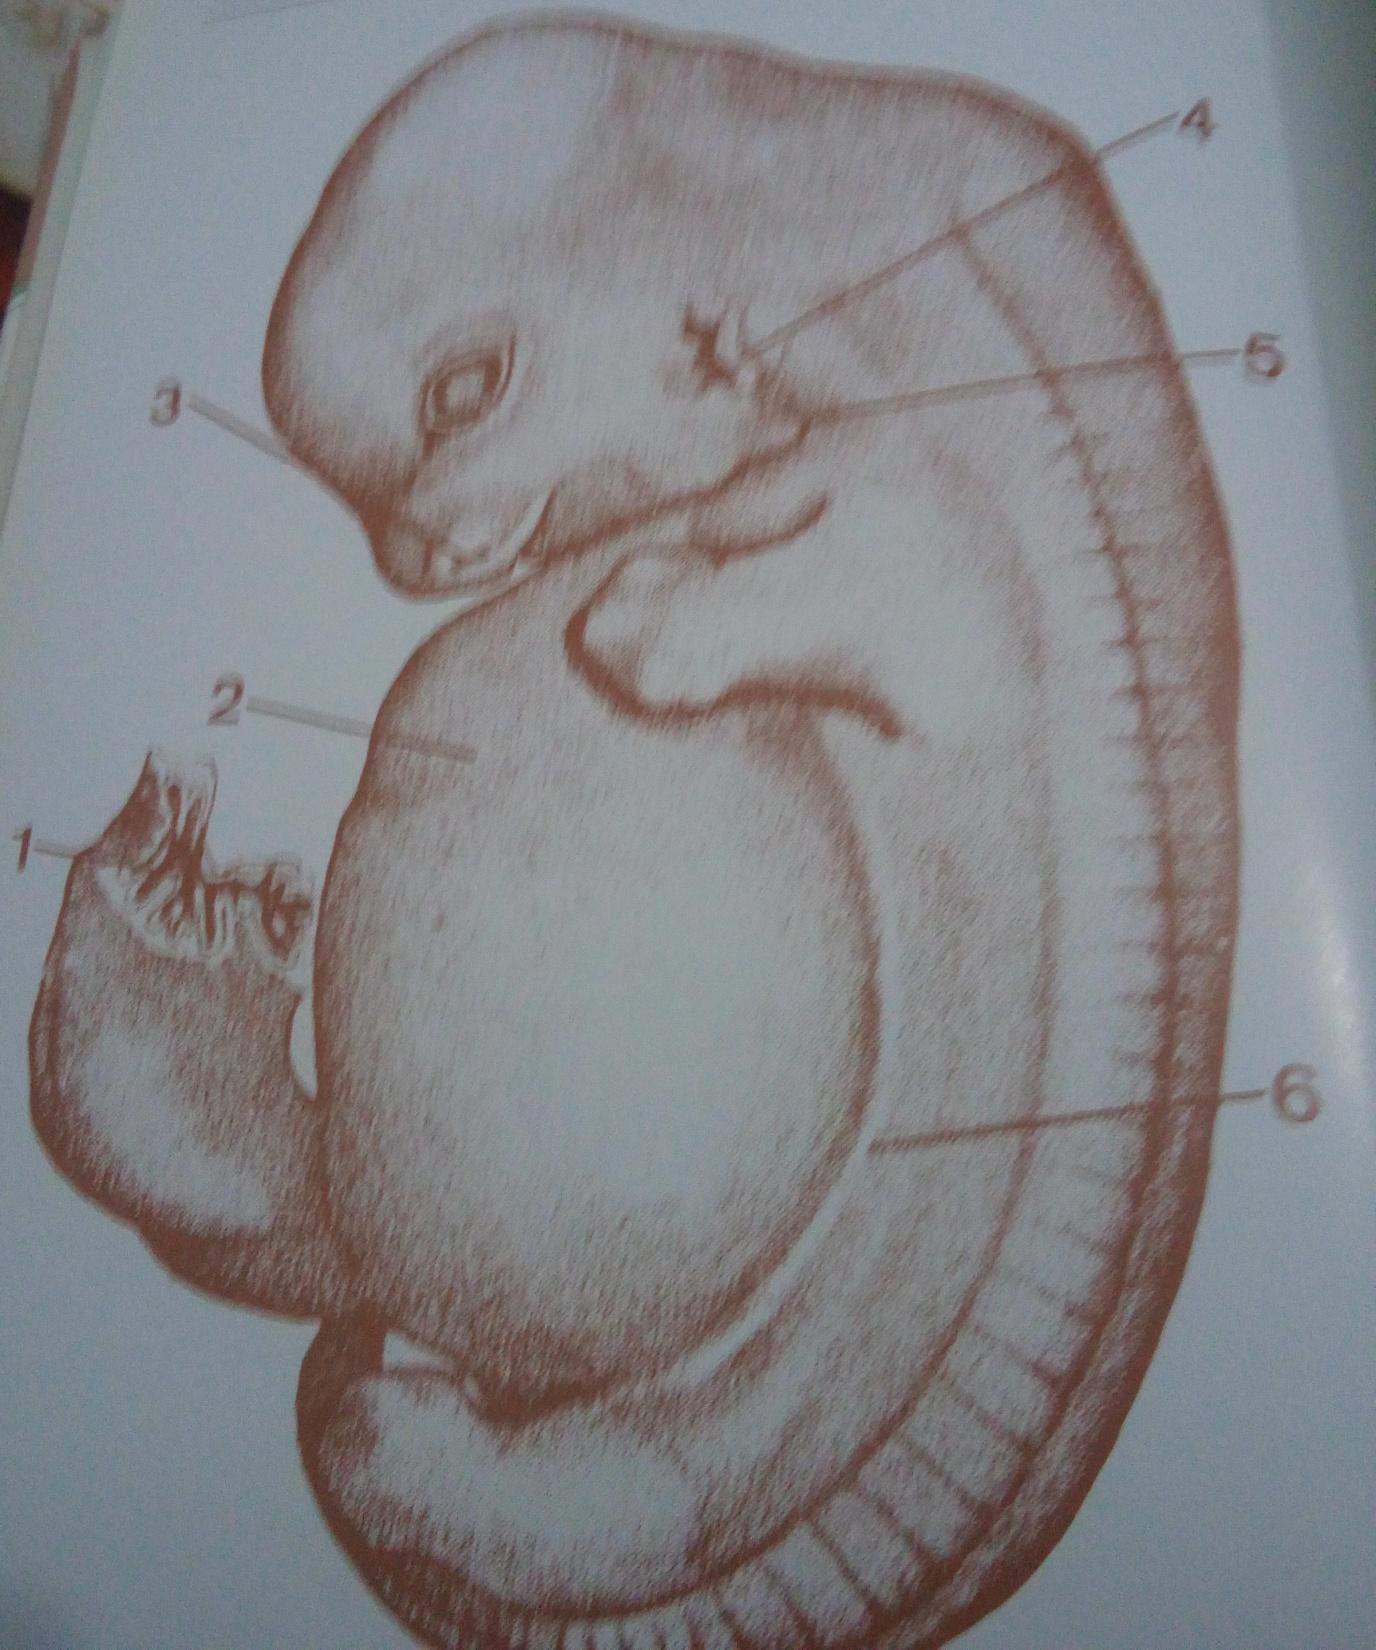 Embrião suíno 24 dias 15mm 1-resto do saco viletinico no cordão umbilical; 2- proeminência